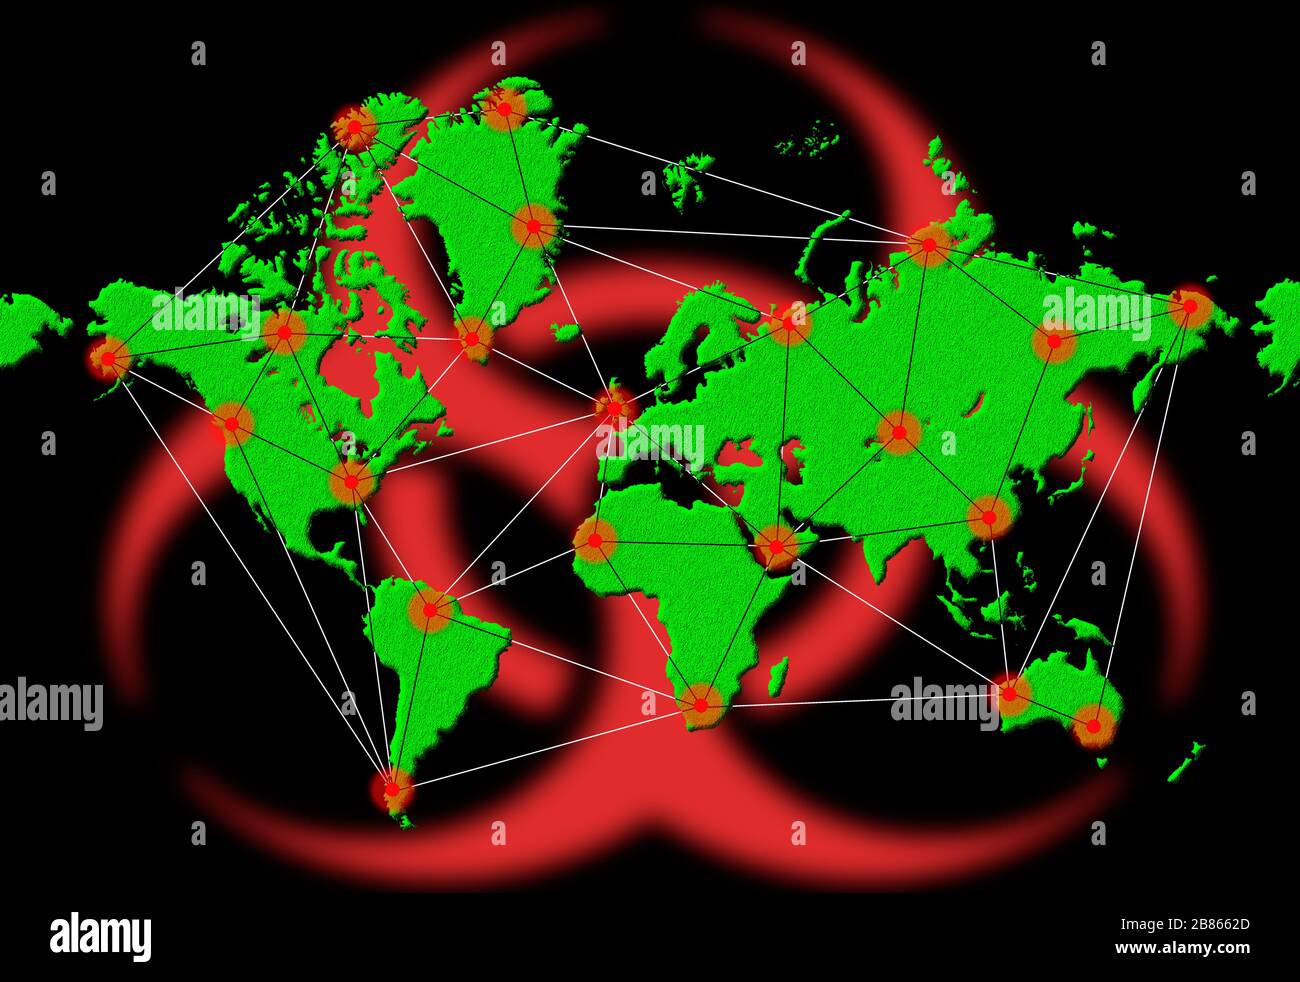 Illustrazione o grafica per mostrare la diffusione mondiale di infezioni o virus infettivi in tutta la mappa del mondo durante una pandemia Coronavirus COVID 19.virus. Foto Stock